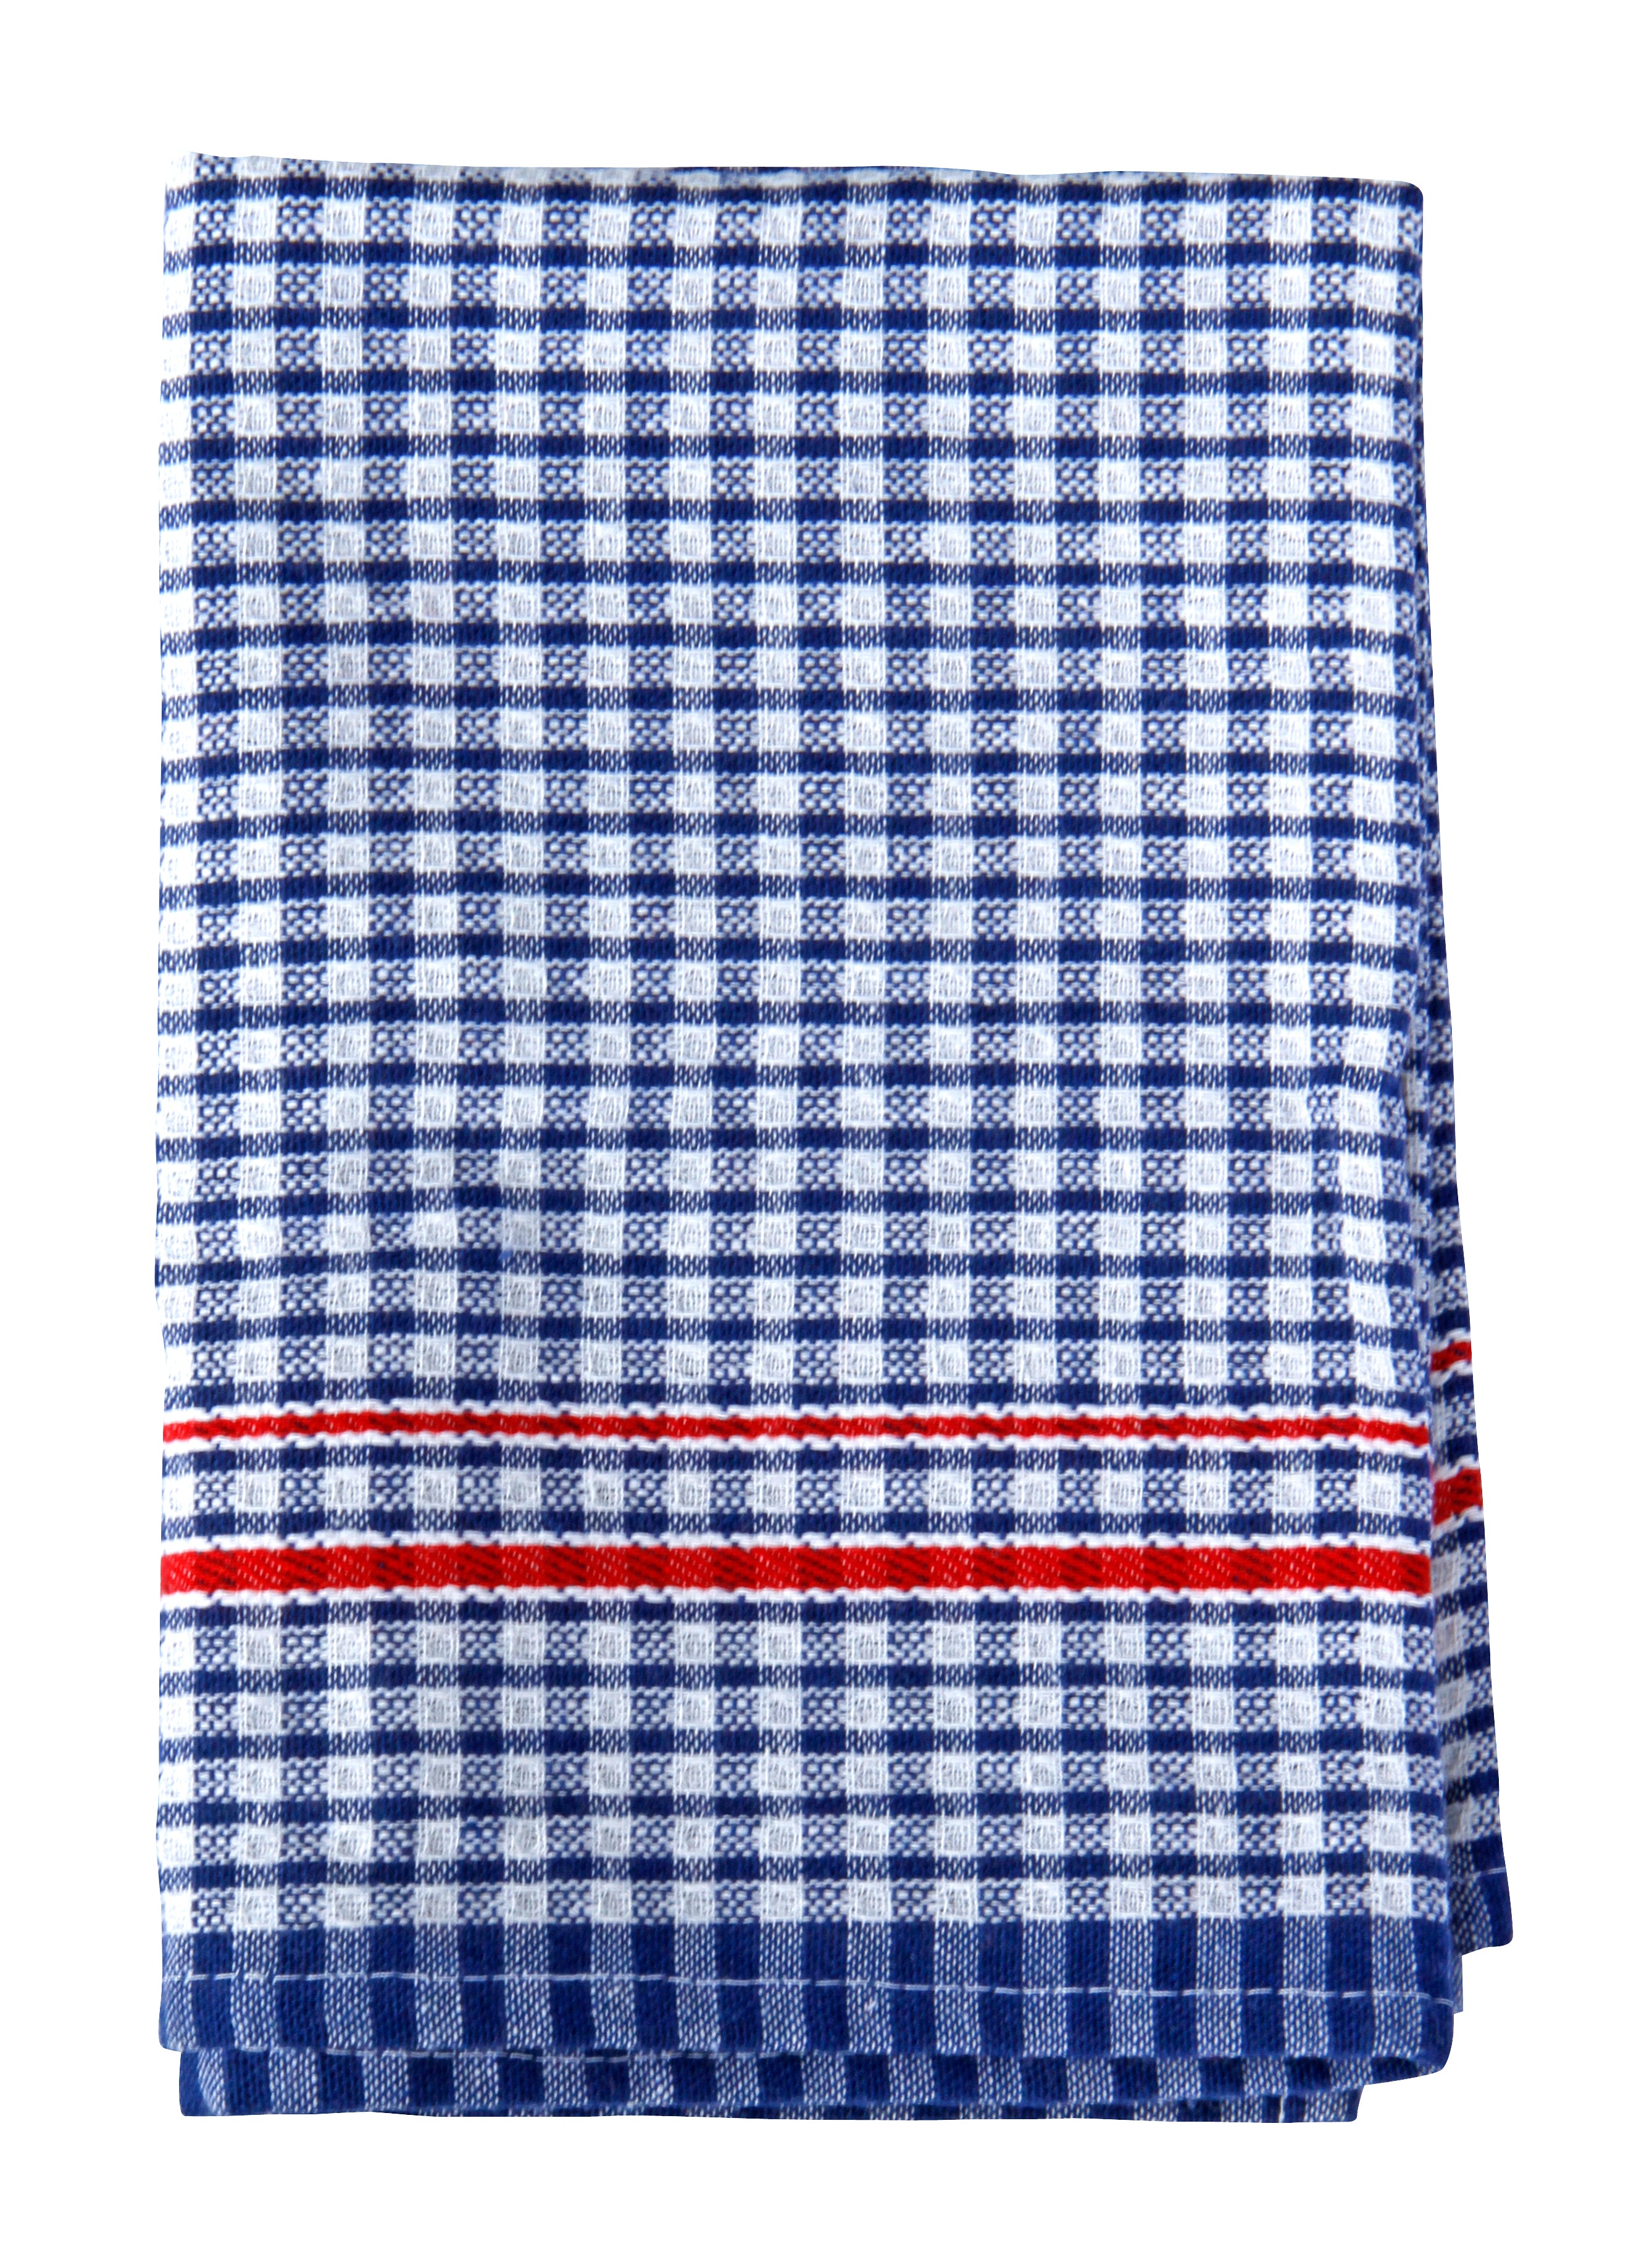 FILTA COTTON TEA TOWEL RED/BLUE (45CM X 65CM)